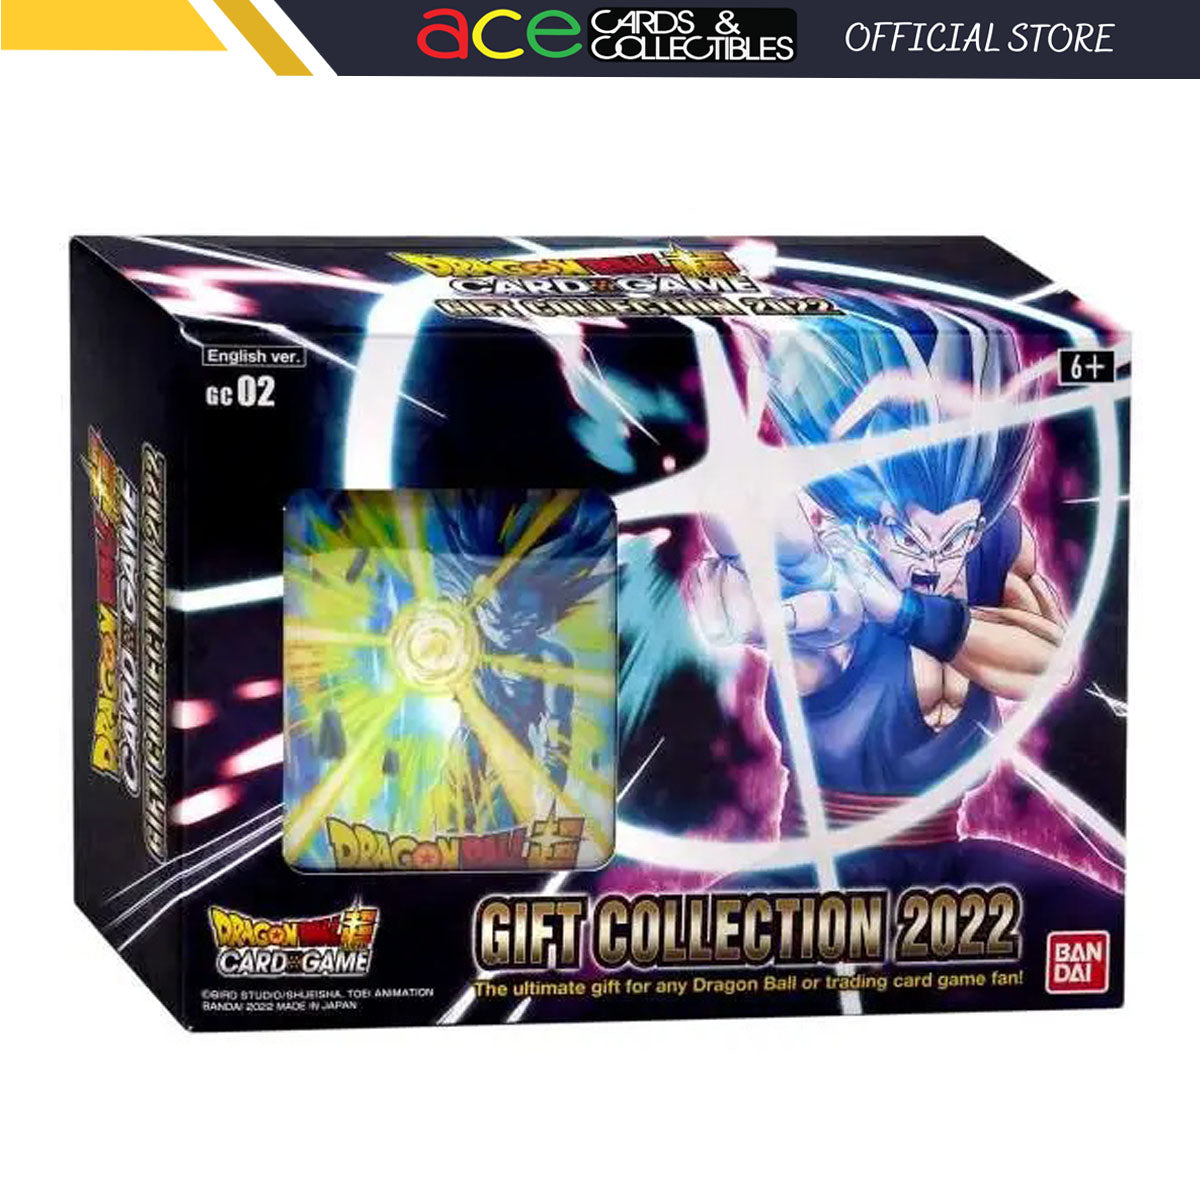 Dragon Ball Super TCG: Gift Collection 2022 [GC-02]-Bandai-Ace Cards & Collectibles